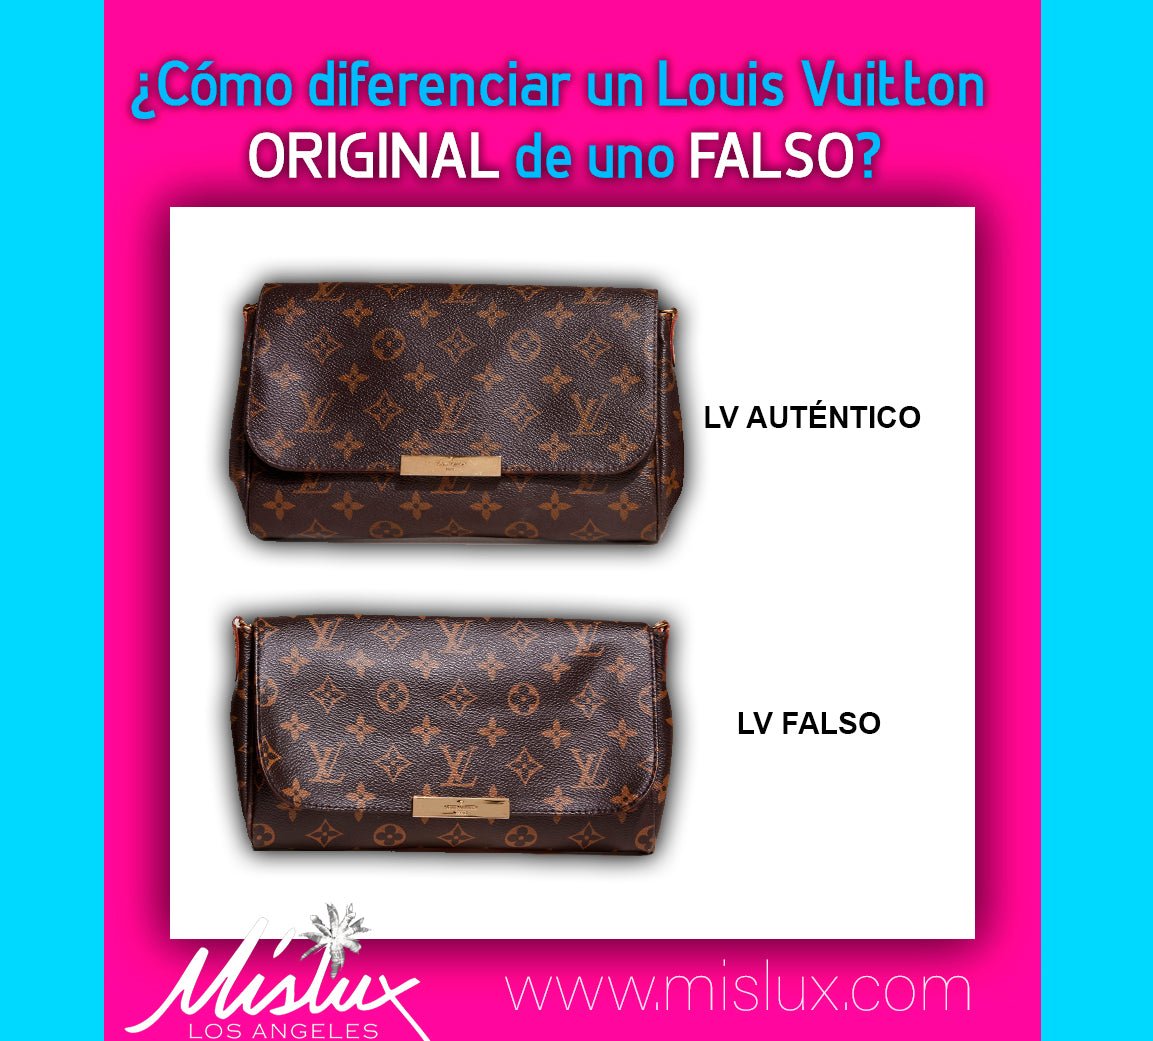 Cómo distinguir un bolso Louis Vuitton original de falso o réplica? MISLUX